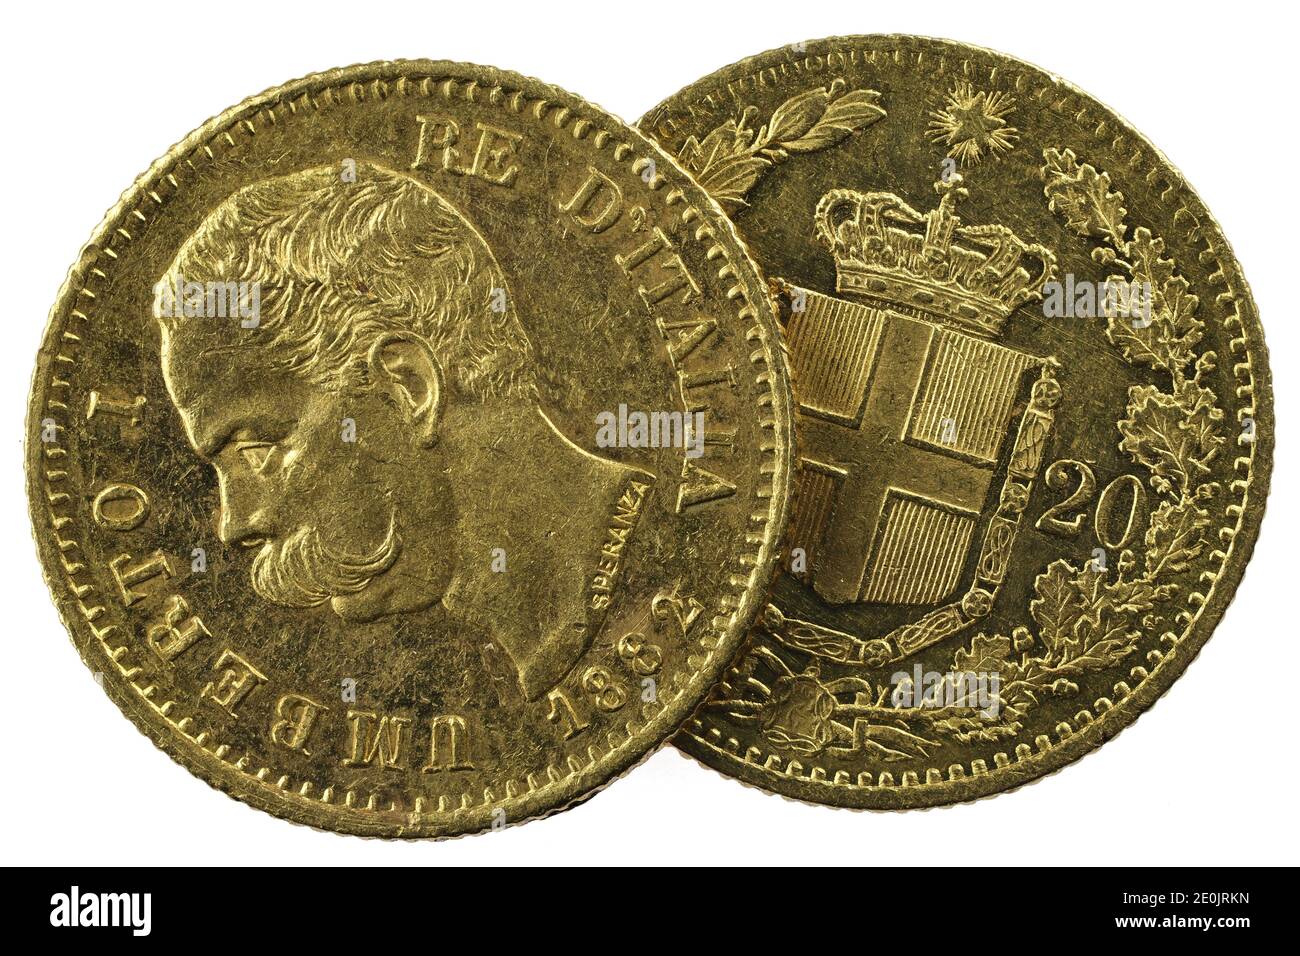 20 pièces d'or Lira italiennes isolées sur fond blanc Banque D'Images